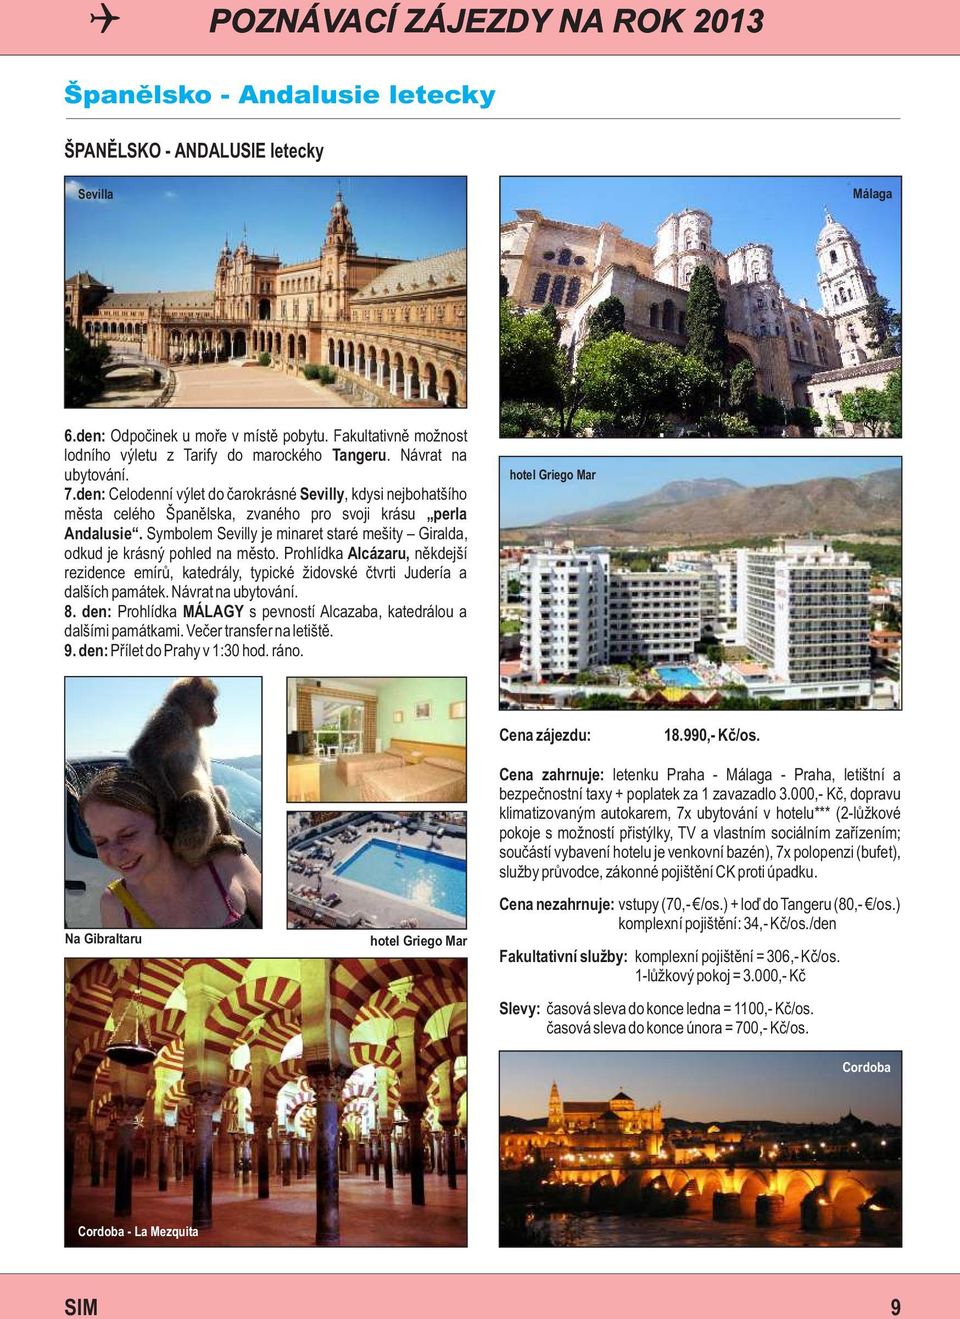 den: Celodenní výlet do čarokrásné Sevilly, kdysi nejbohatšího města celého Španělska, zvaného pro svoji krásu perla Andalusie.